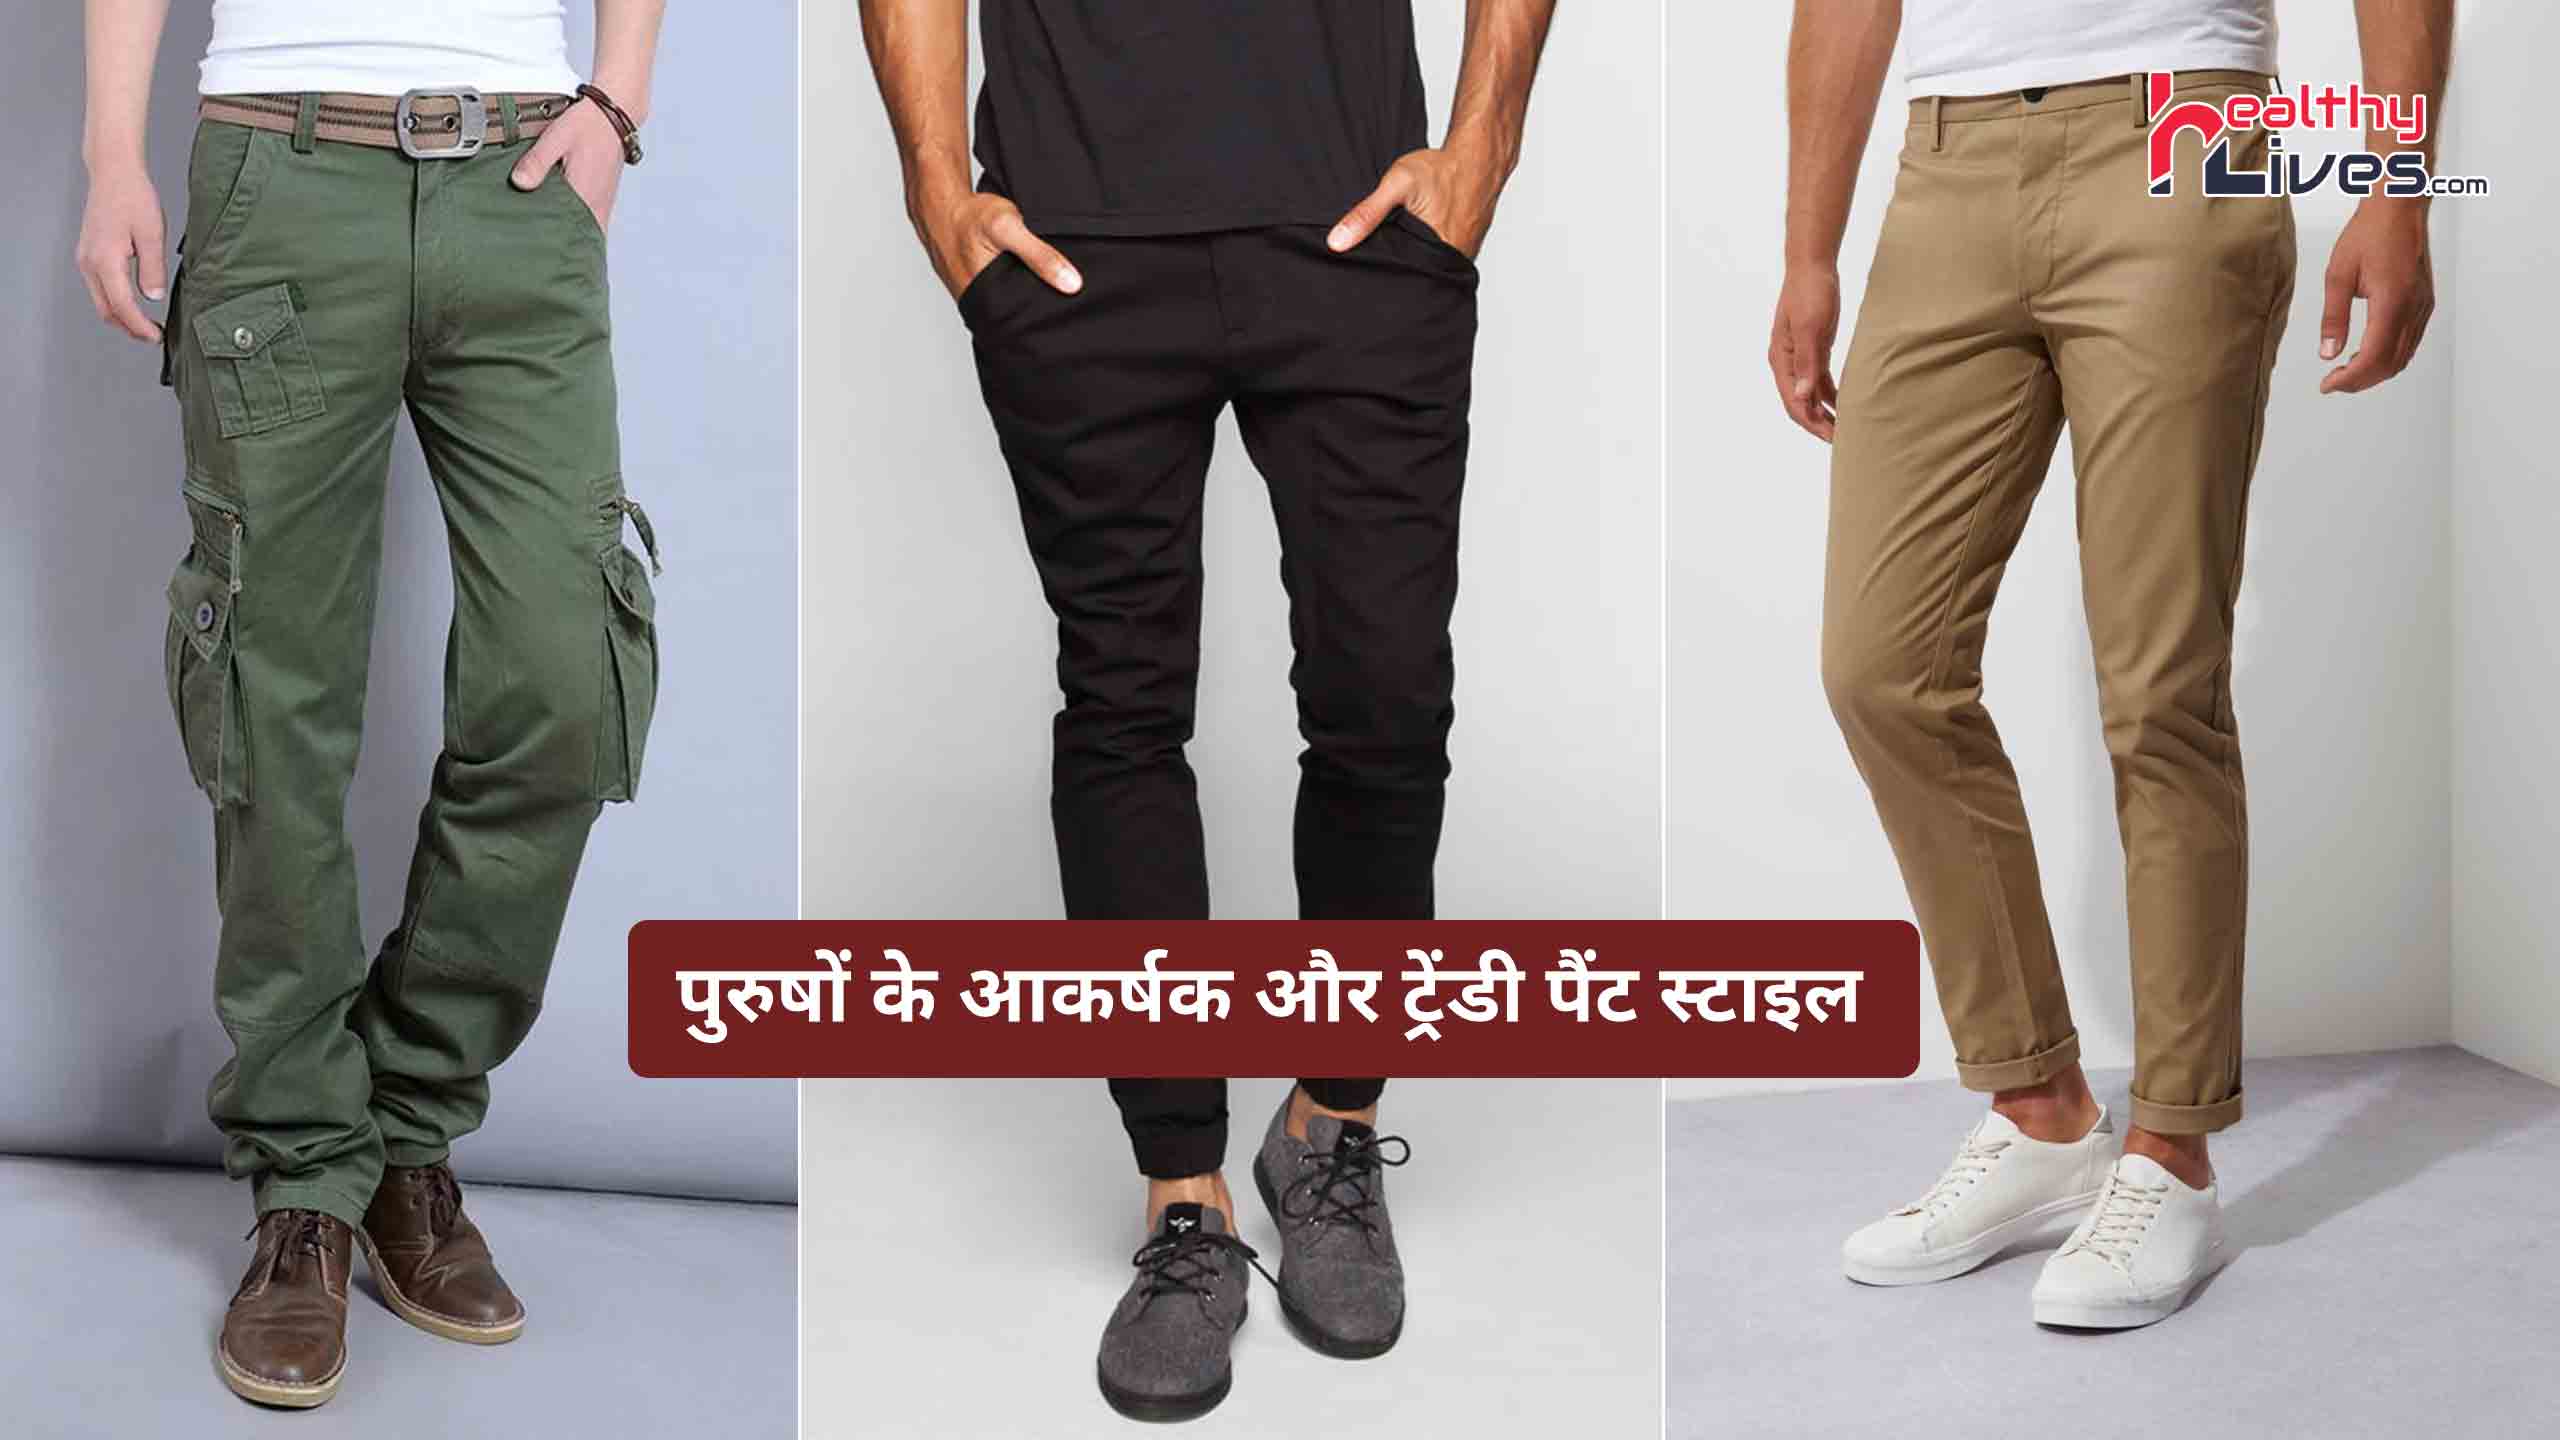 Mens Pants Style: पुरुषों के आकर्षक और स्टाइलिश पैंट स्टाइल जो आजकल हैं ट्रेंड में